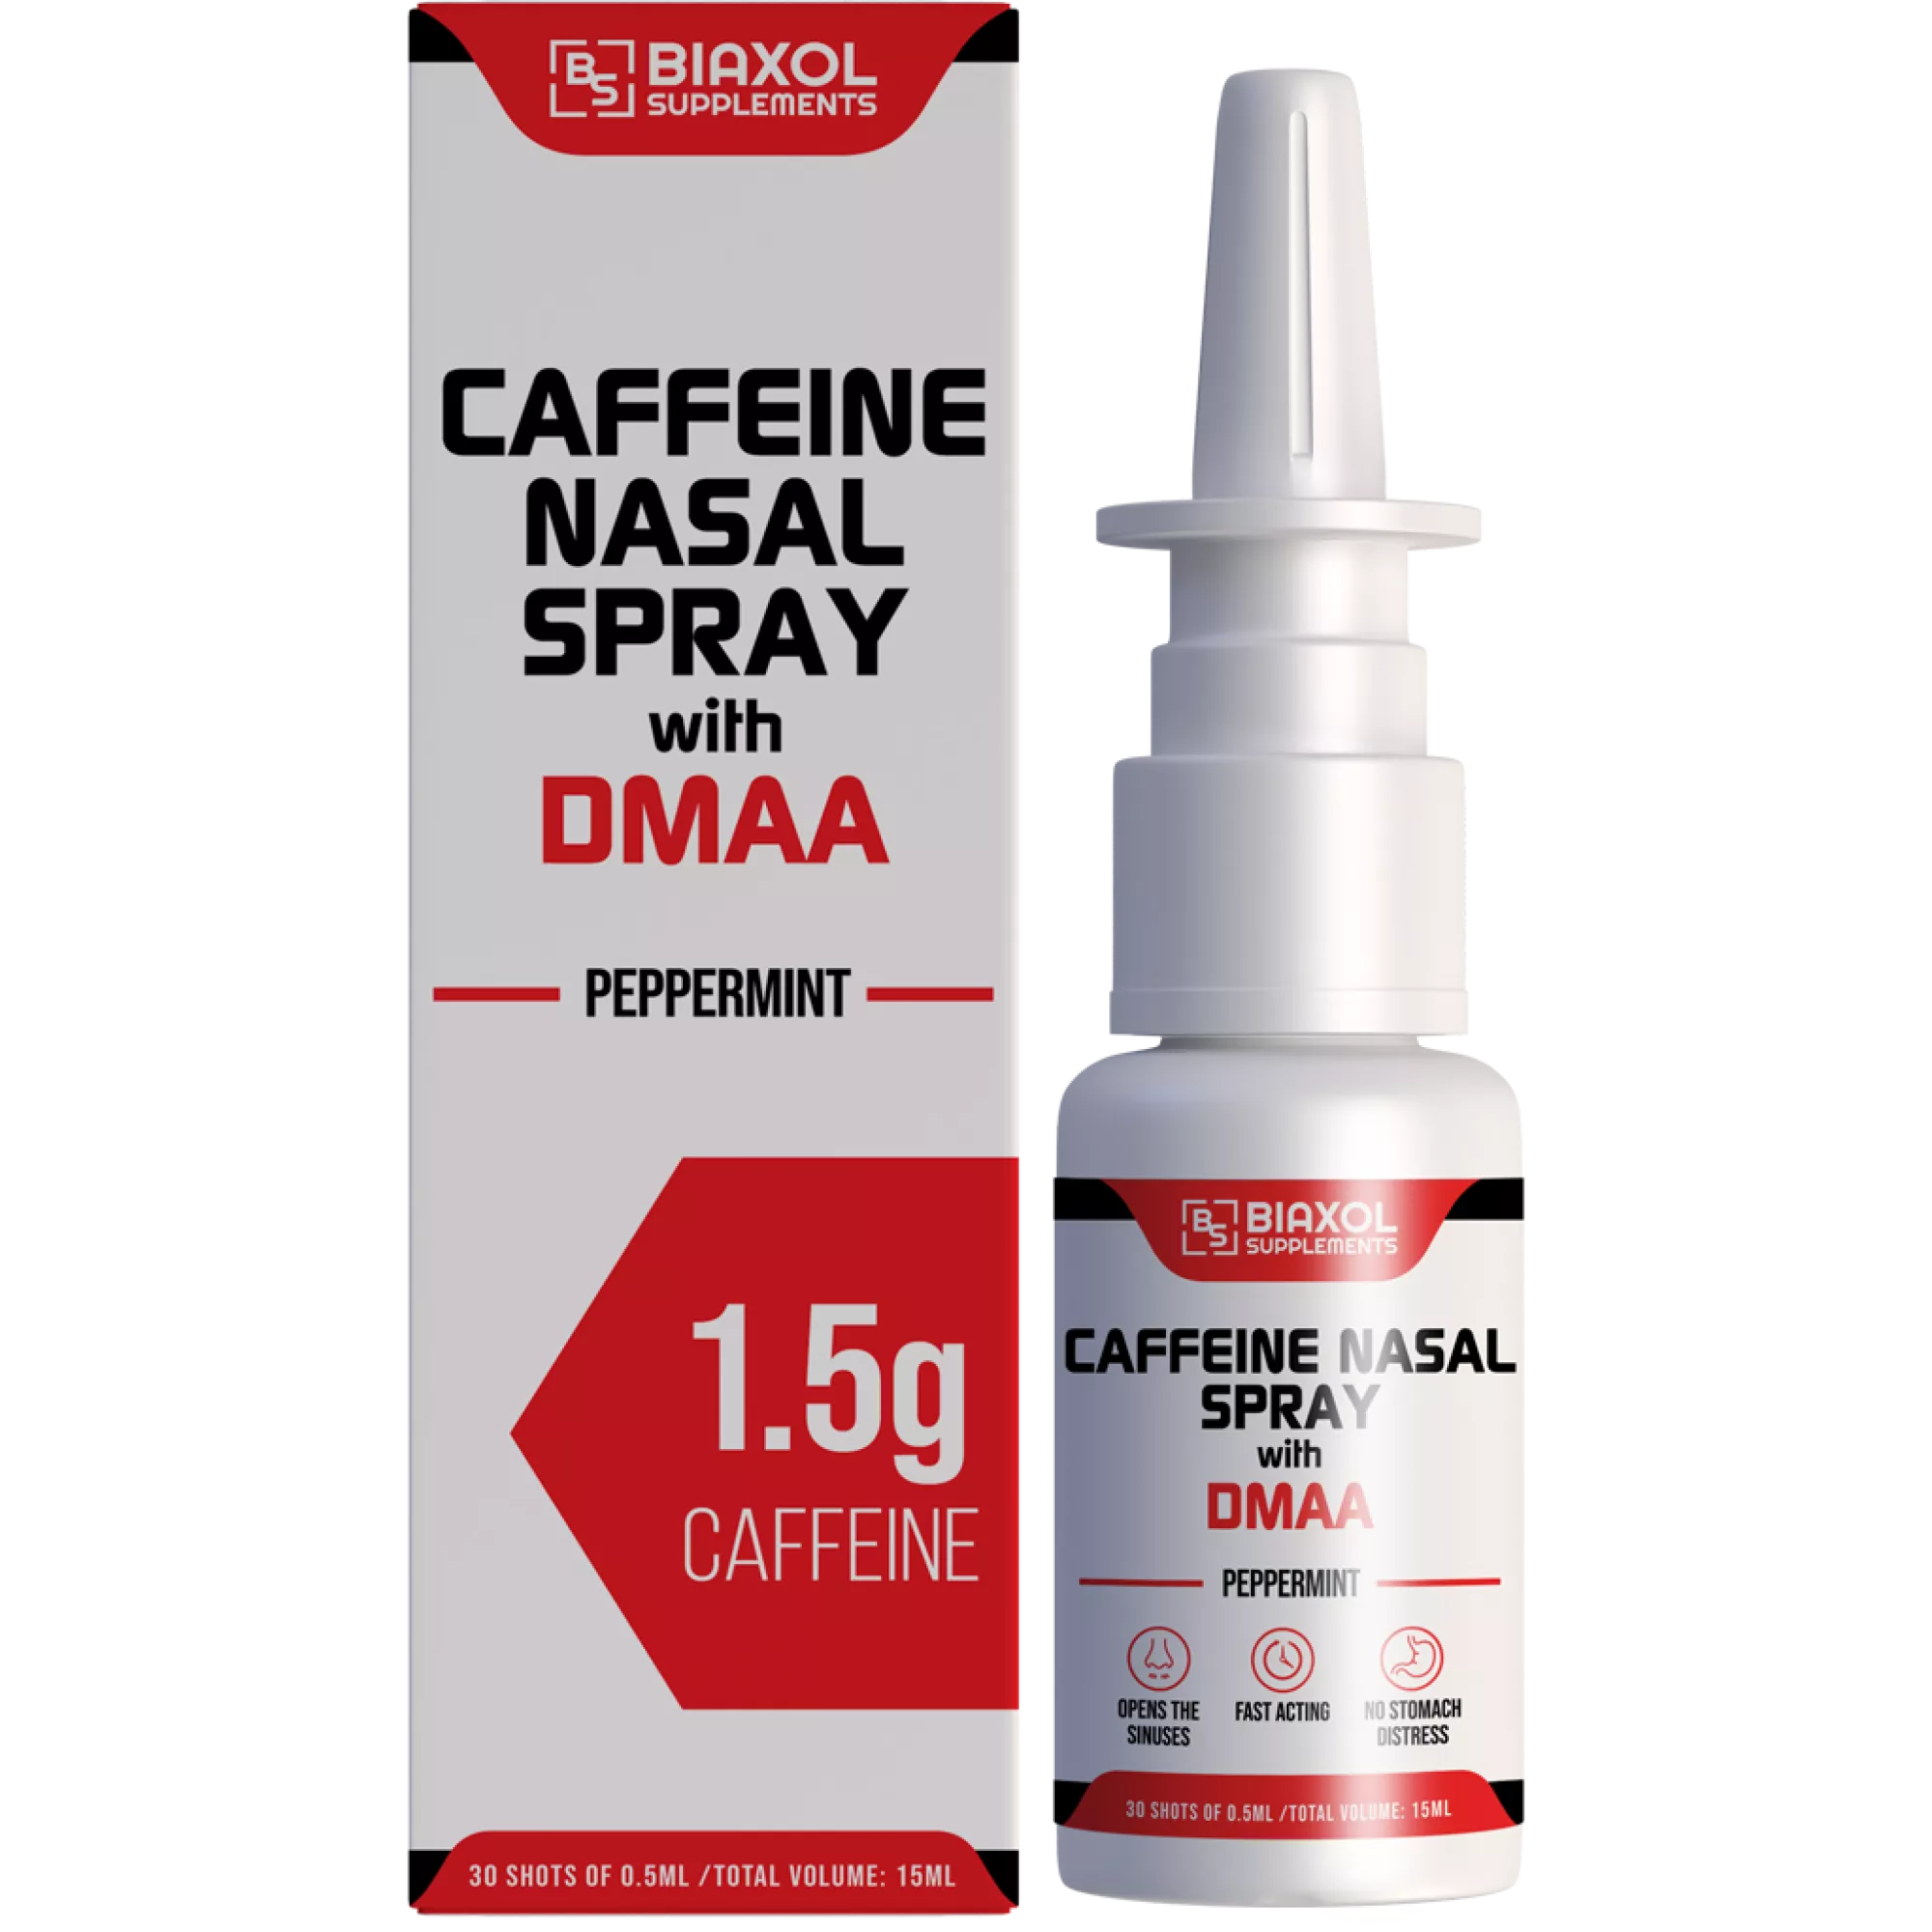 CAFFEINE NASAL SPRAY WITH DMAA, Biaxol, Buy Steroids Online - www.deuspower.shop